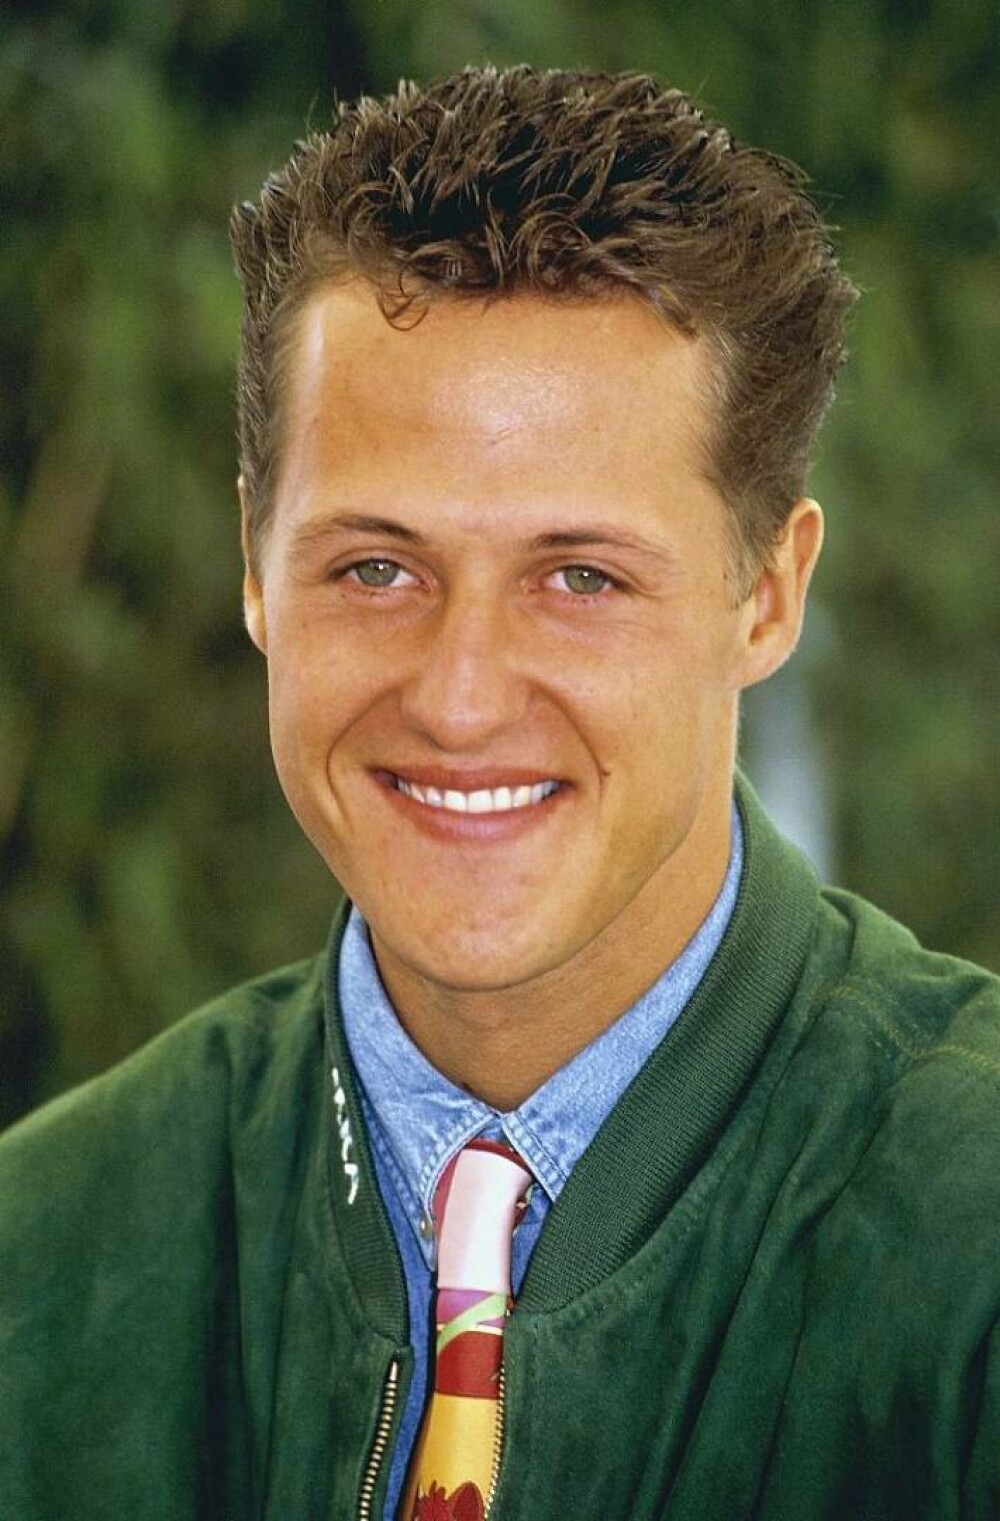 Michael Schumacher împlineşte 55 de ani. Care este starea sa de sănătate | Imagini de colecție - Imaginea 42